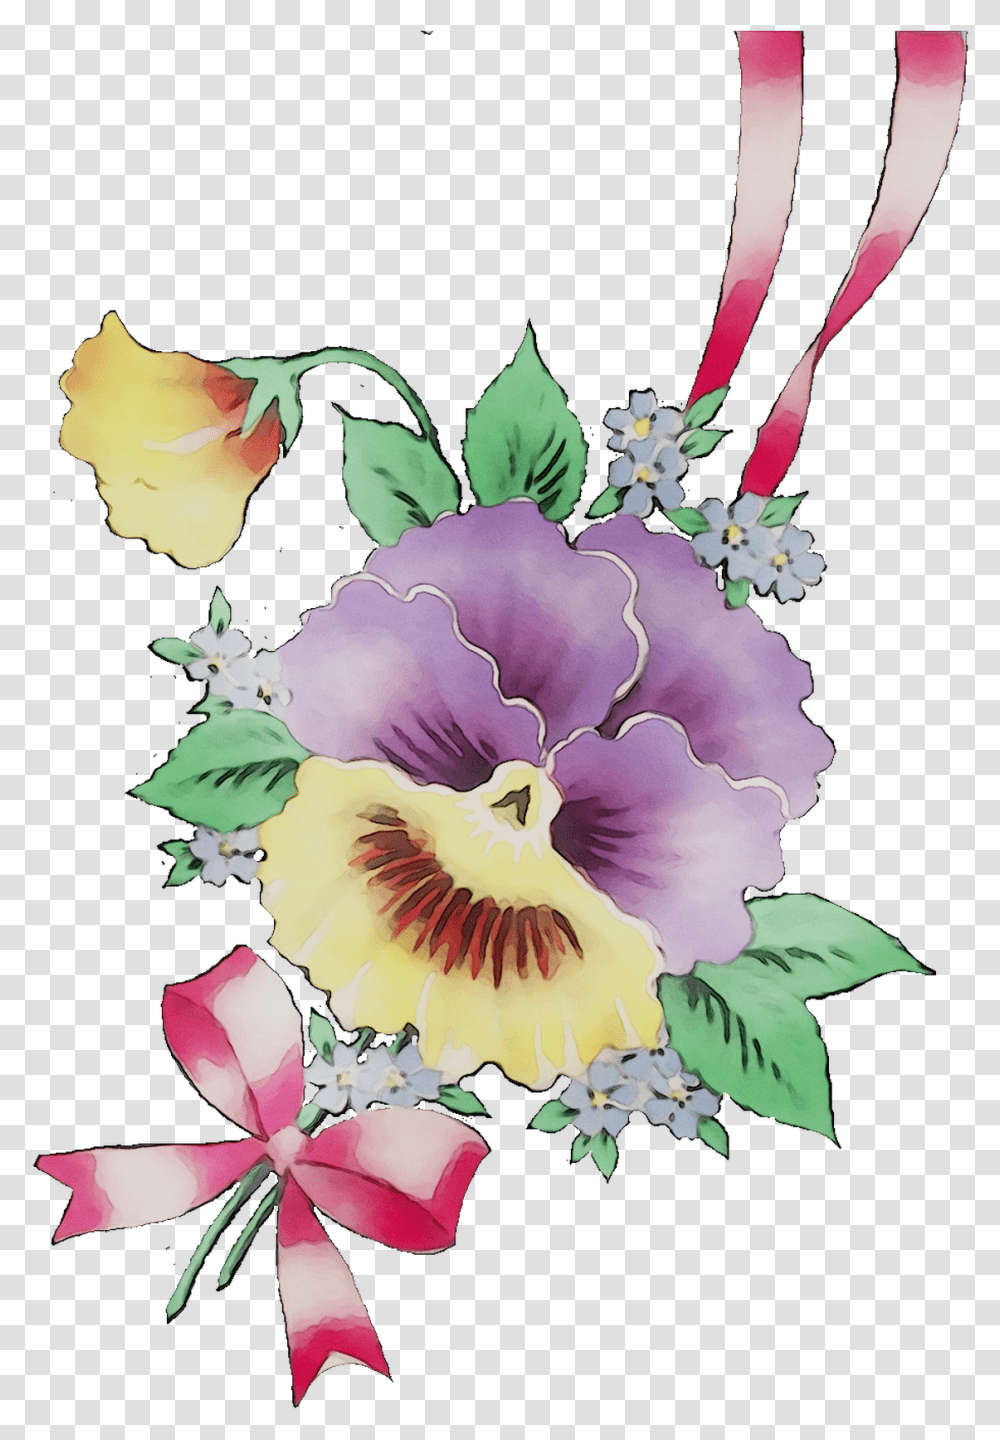 Cut Bouquet Pansy Flower Design Floral Flowers Clipart Watercolor Pastel Flowers, Plant, Blossom, Rose Transparent Png